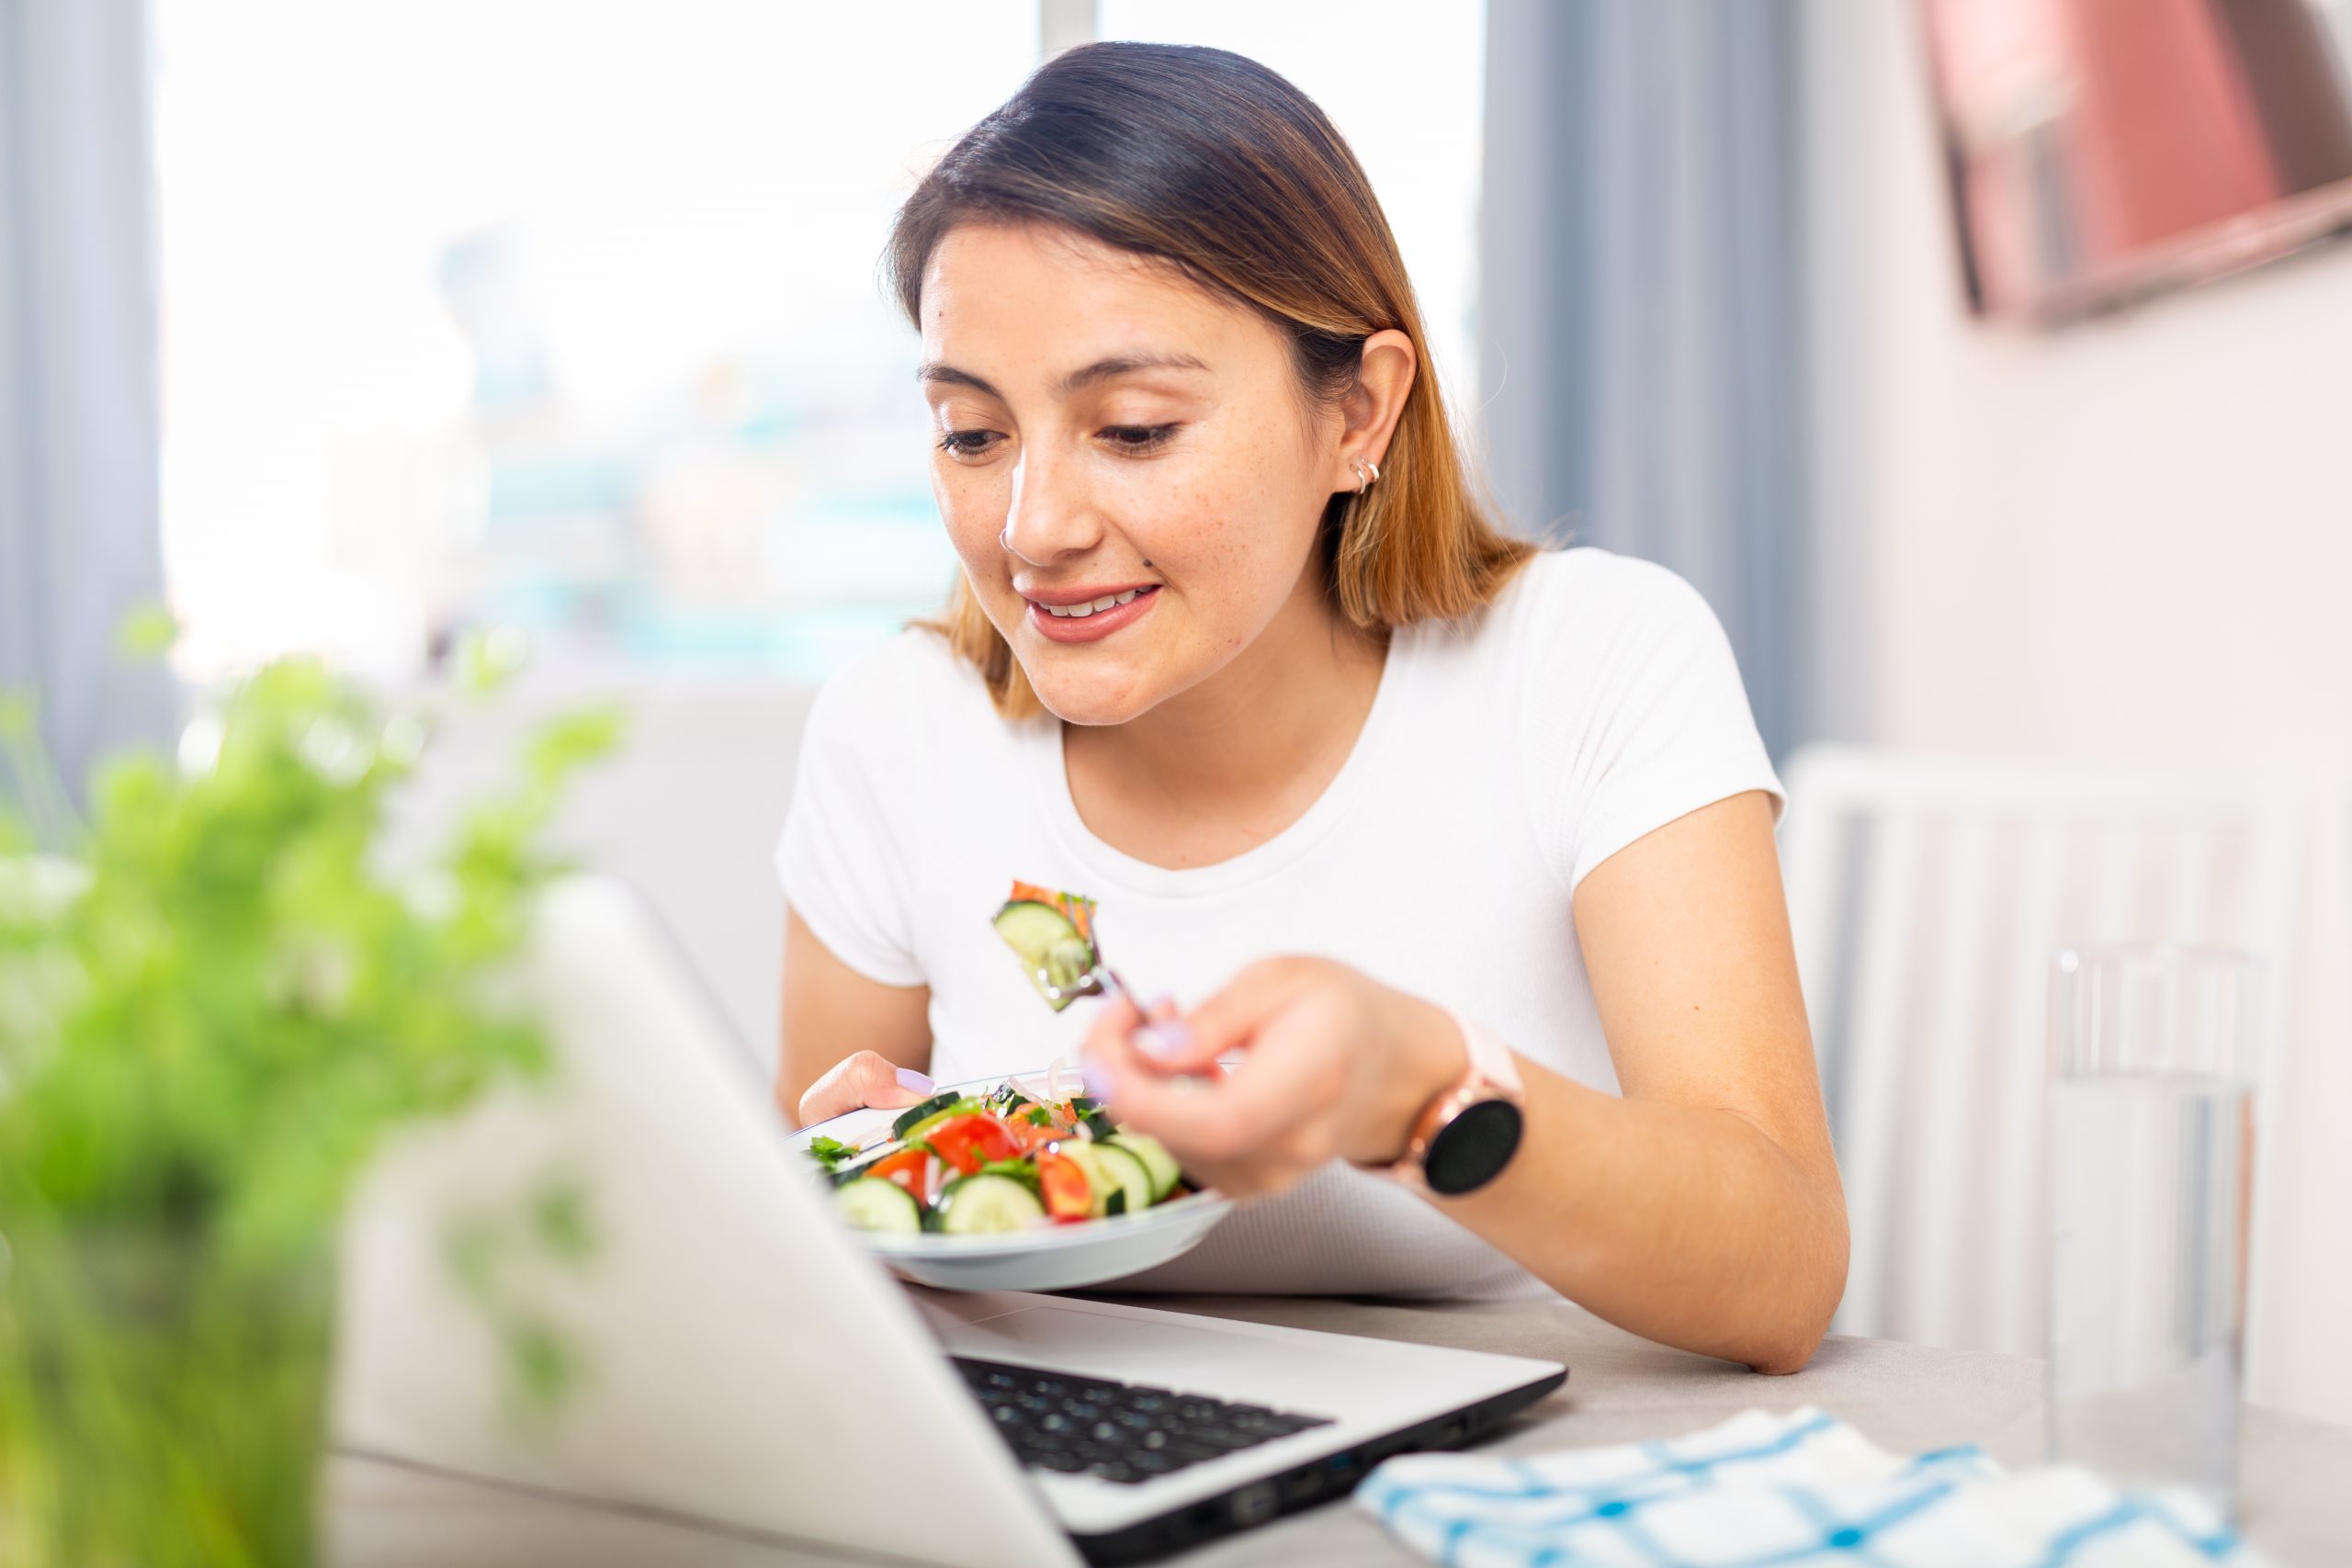 Woman eating salad at computer